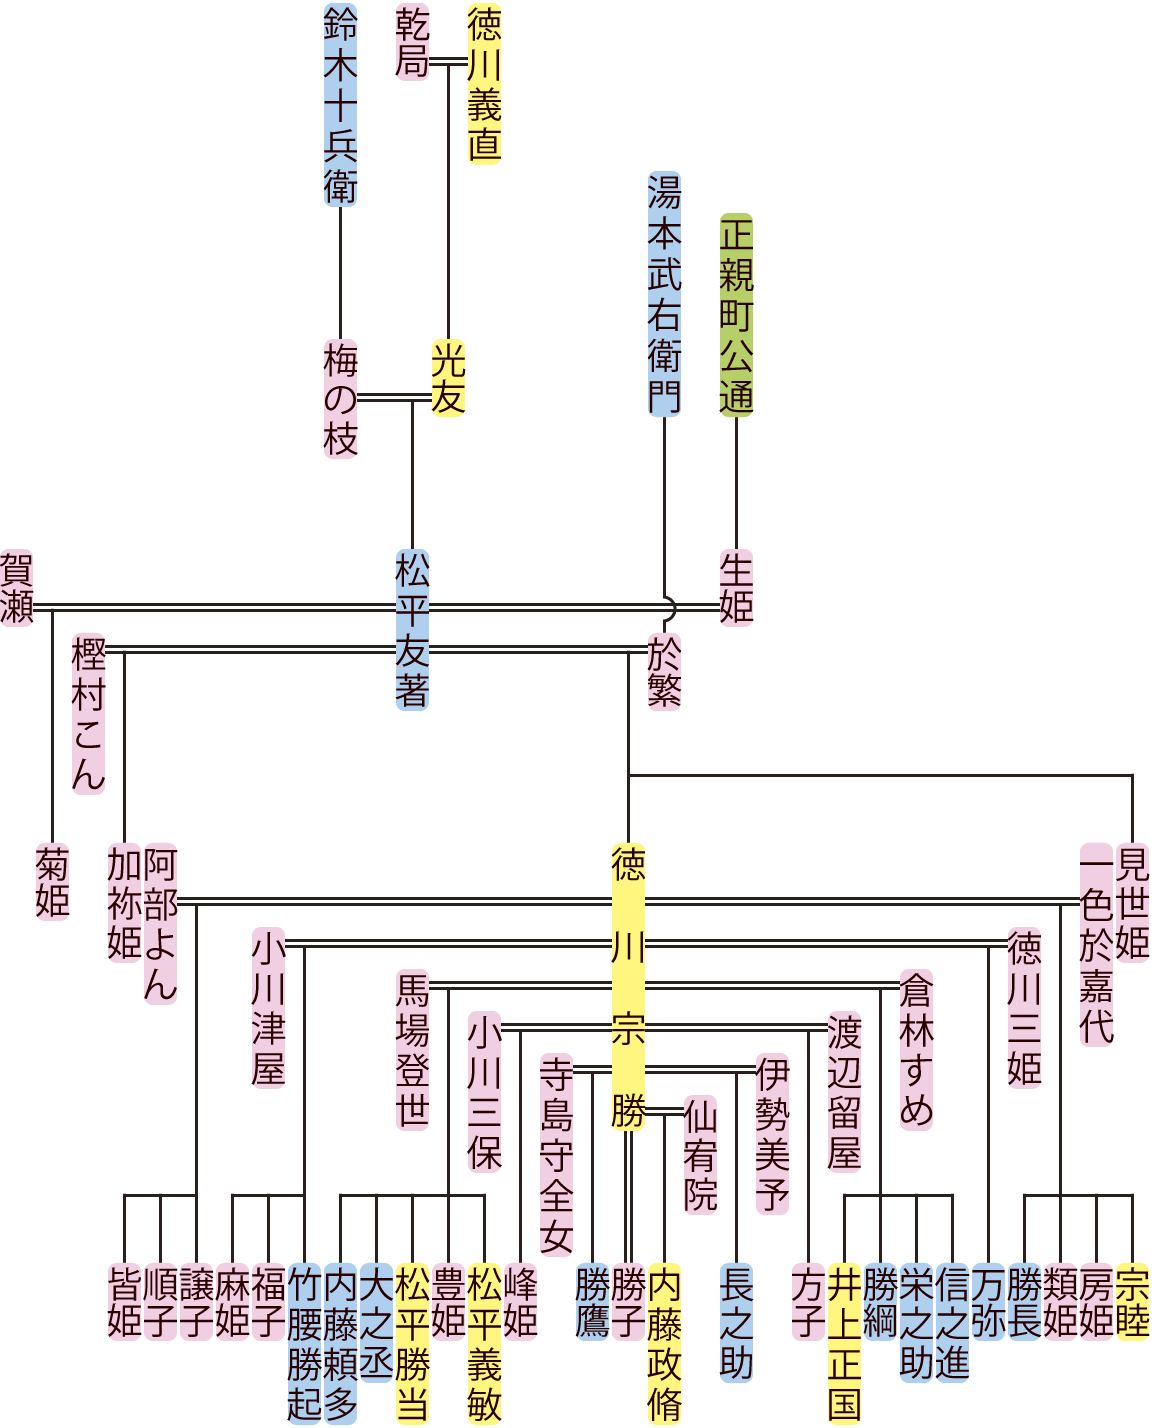 松平友著の系図